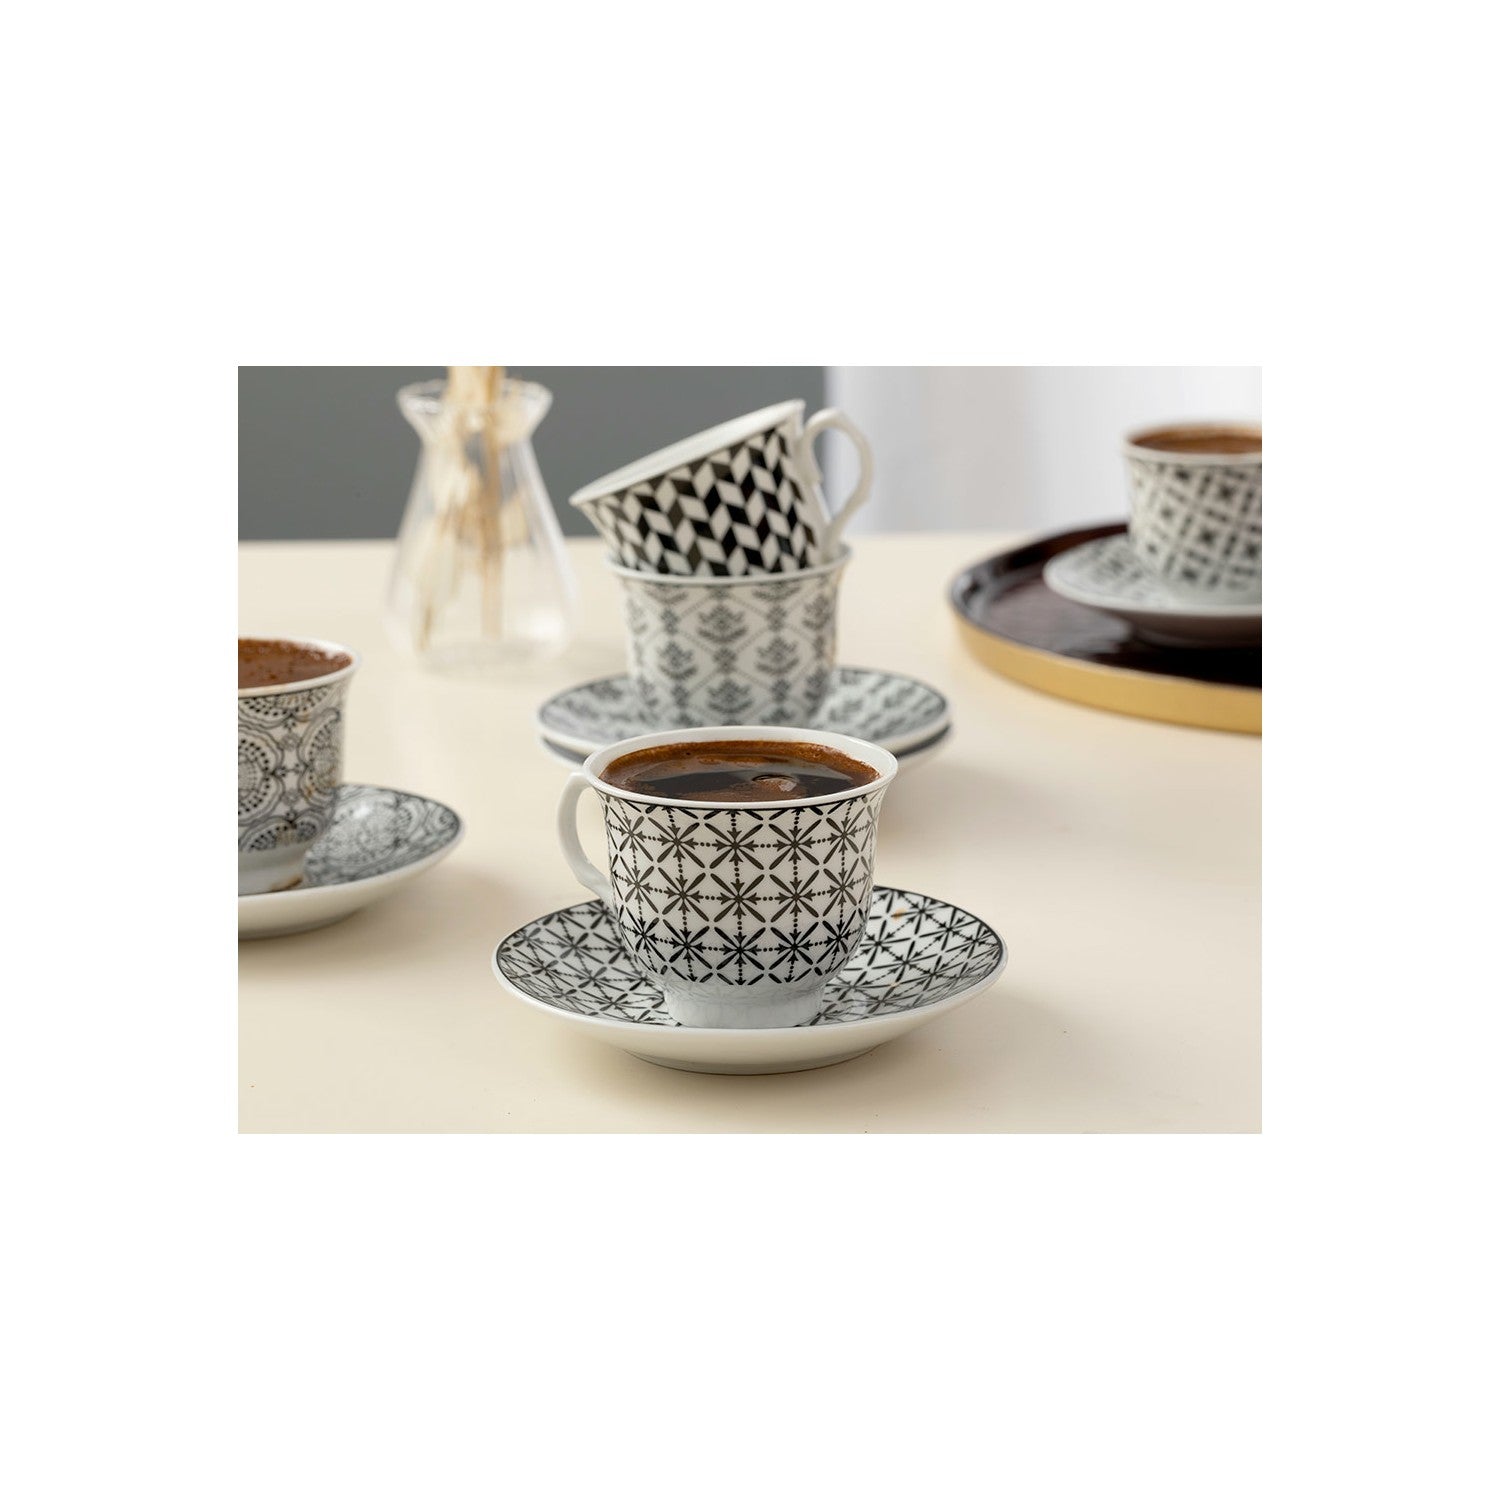 Turkish Tea/Coffee set